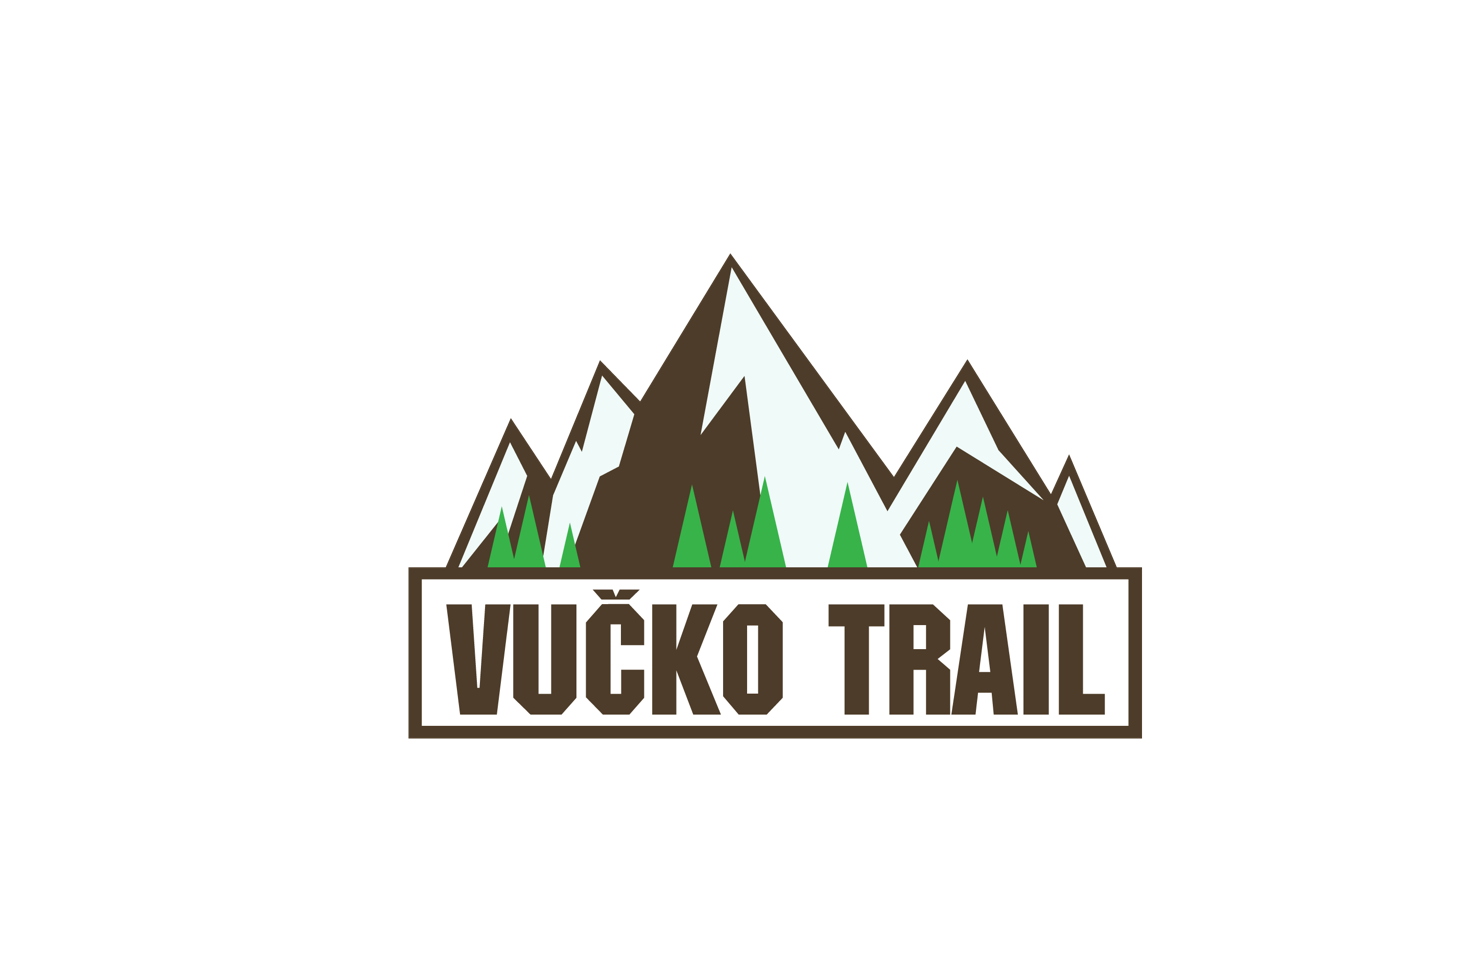 Vucko trail 2022 prevoz na start (Transport to Vucko trail 2022 start)